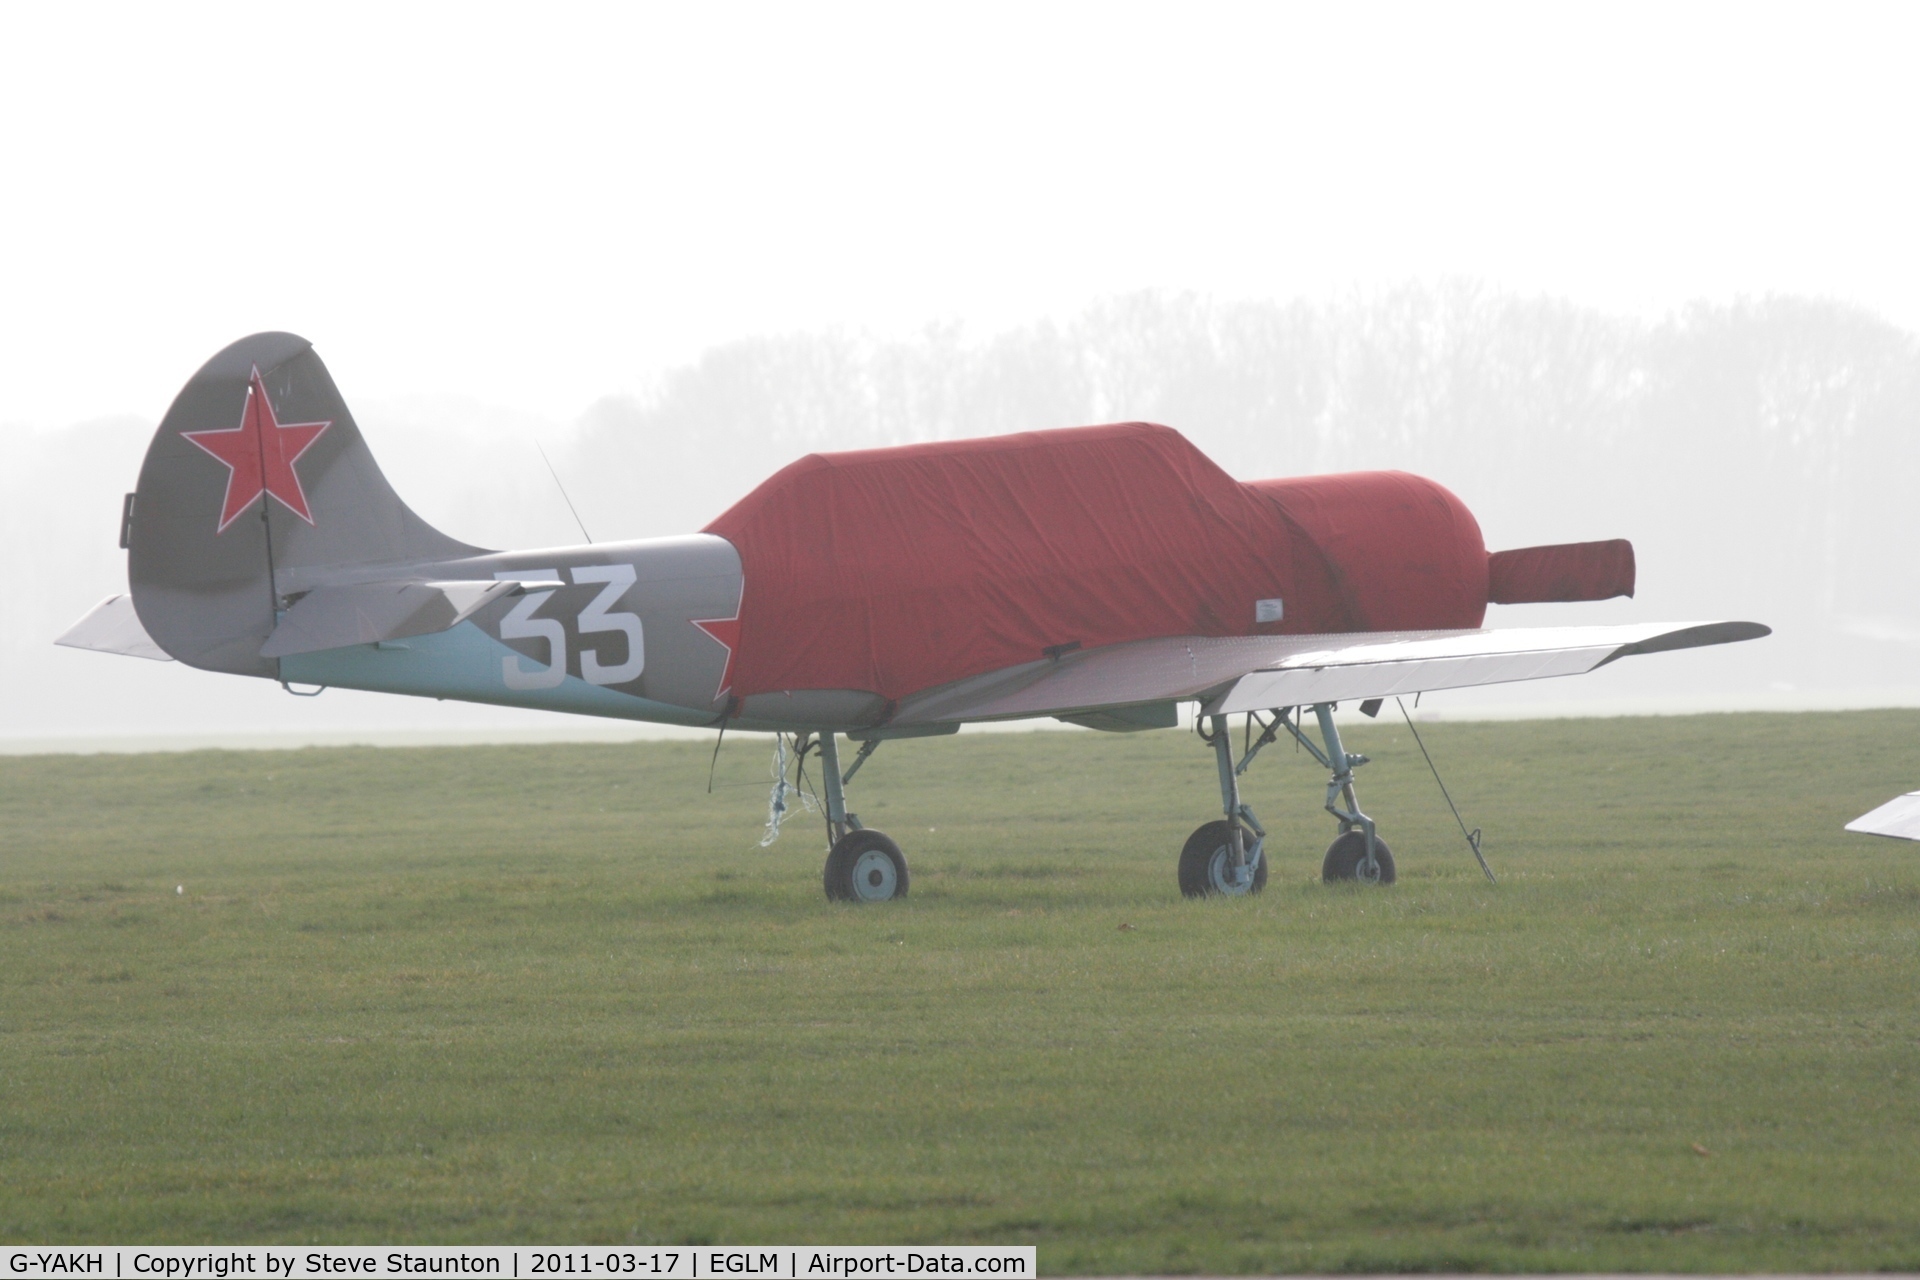 G-YAKH, 1989 Bacau Yak-52 C/N 899915, Taken at White Waltham Airfield March 2011